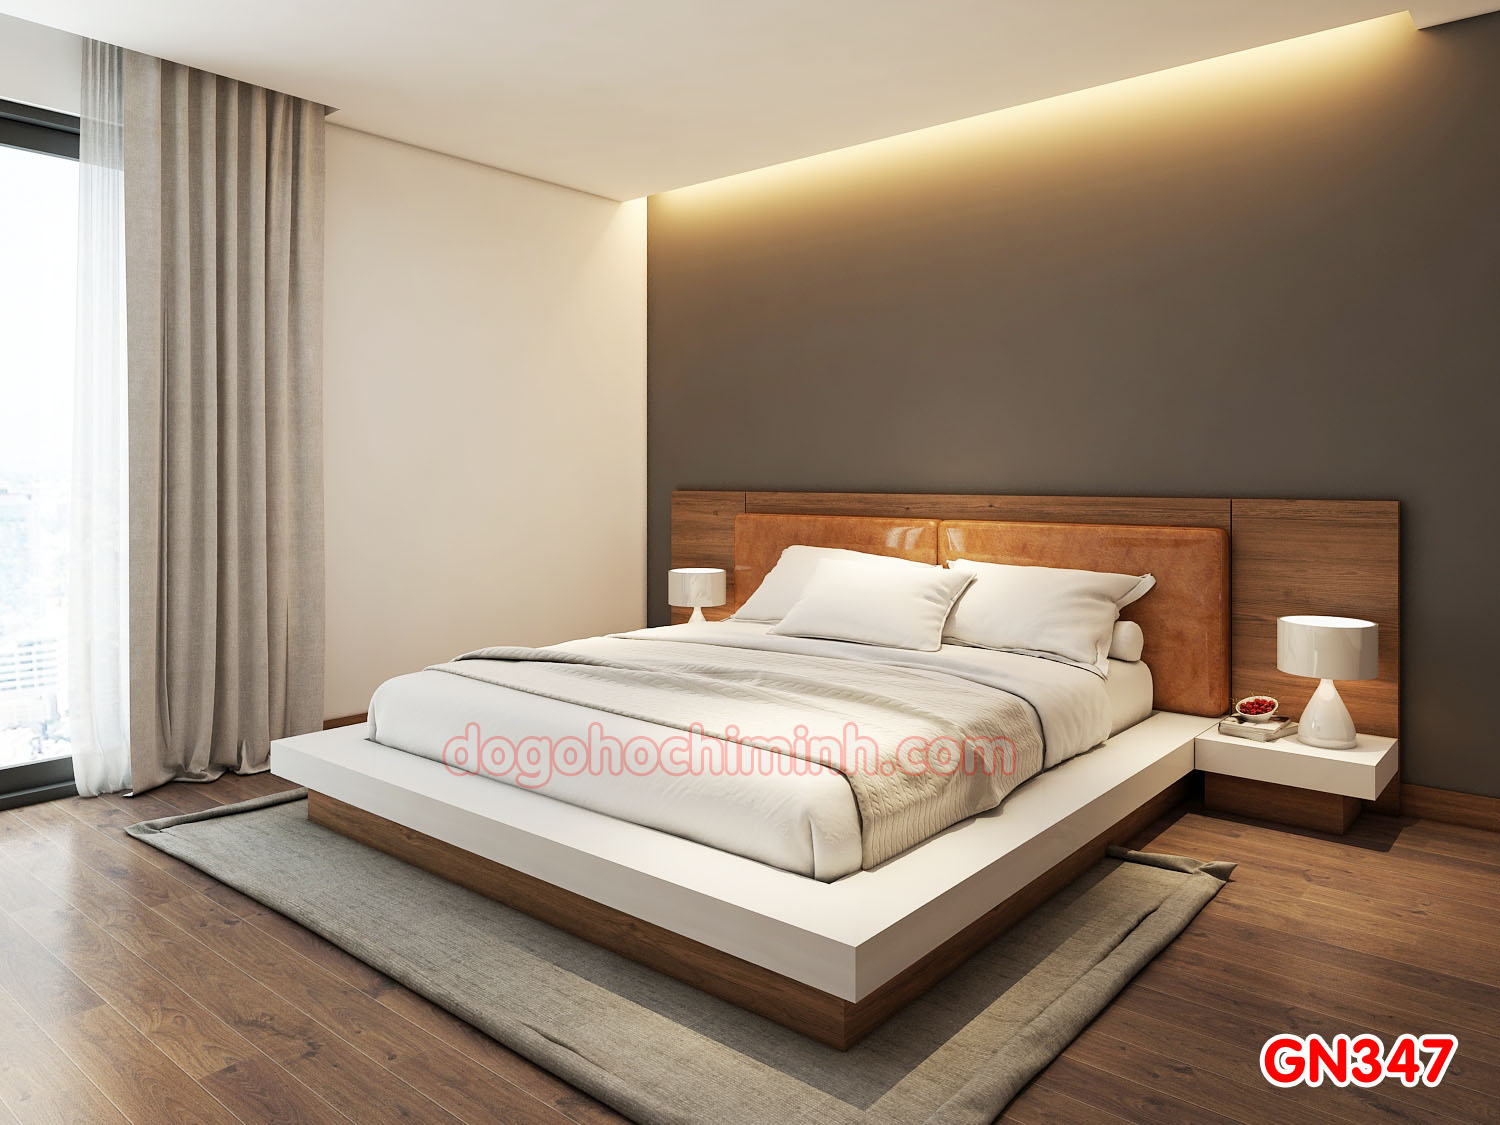 Giường ngủ gỗ đẹp cao cấp giá rẻ GN347